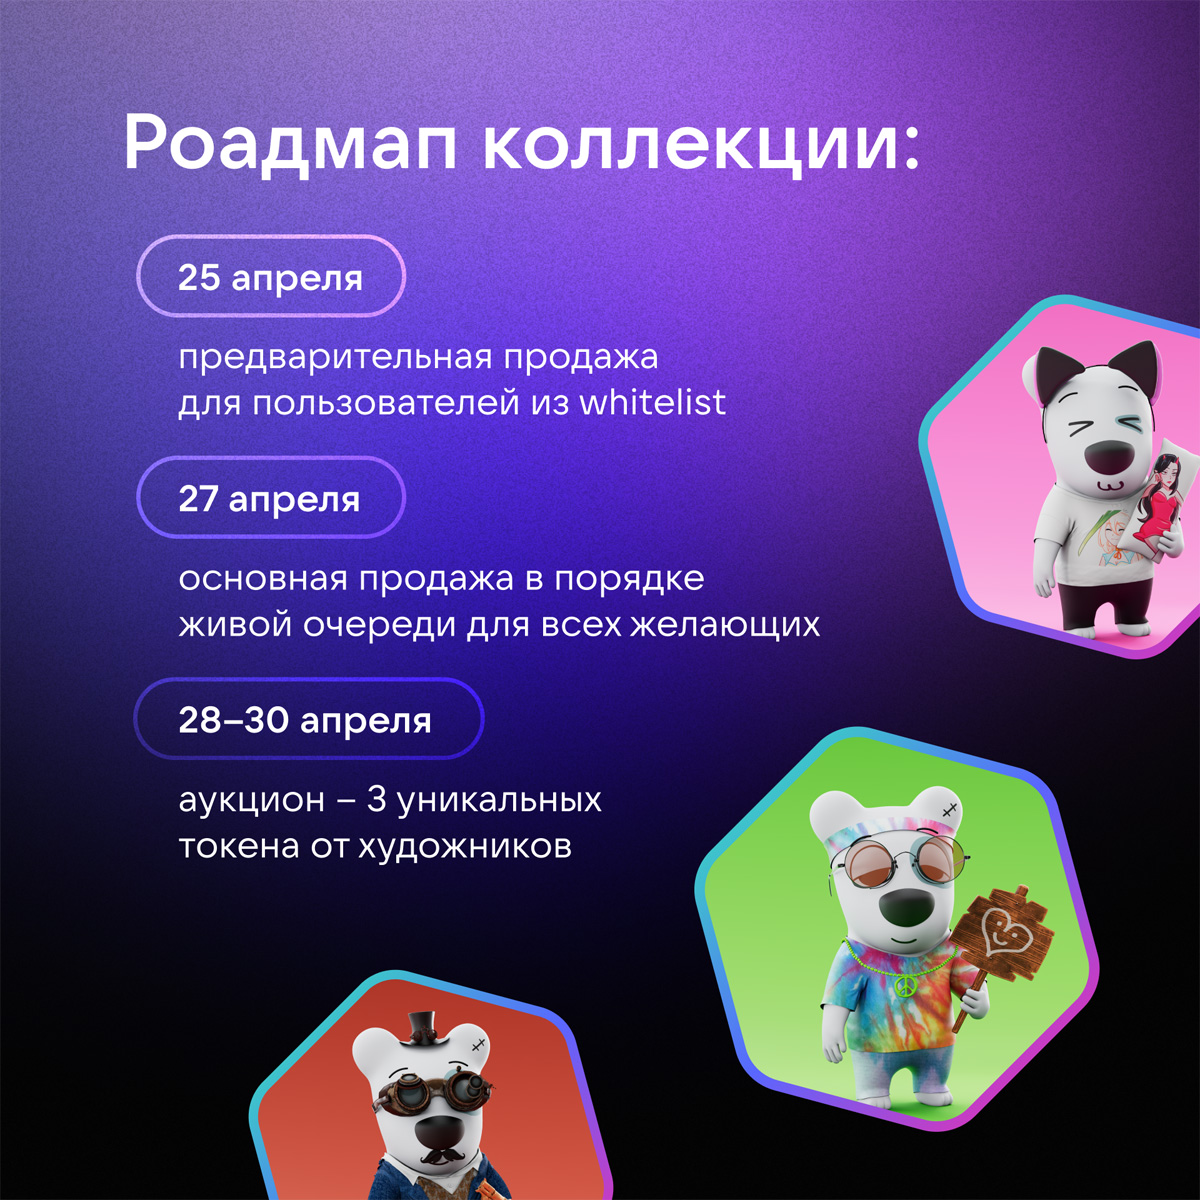 ВКонтакте представляет свою первую коллекцию NFT — пользователи смогут купить уникальные CryptoSpotty за рубли | Новости компании